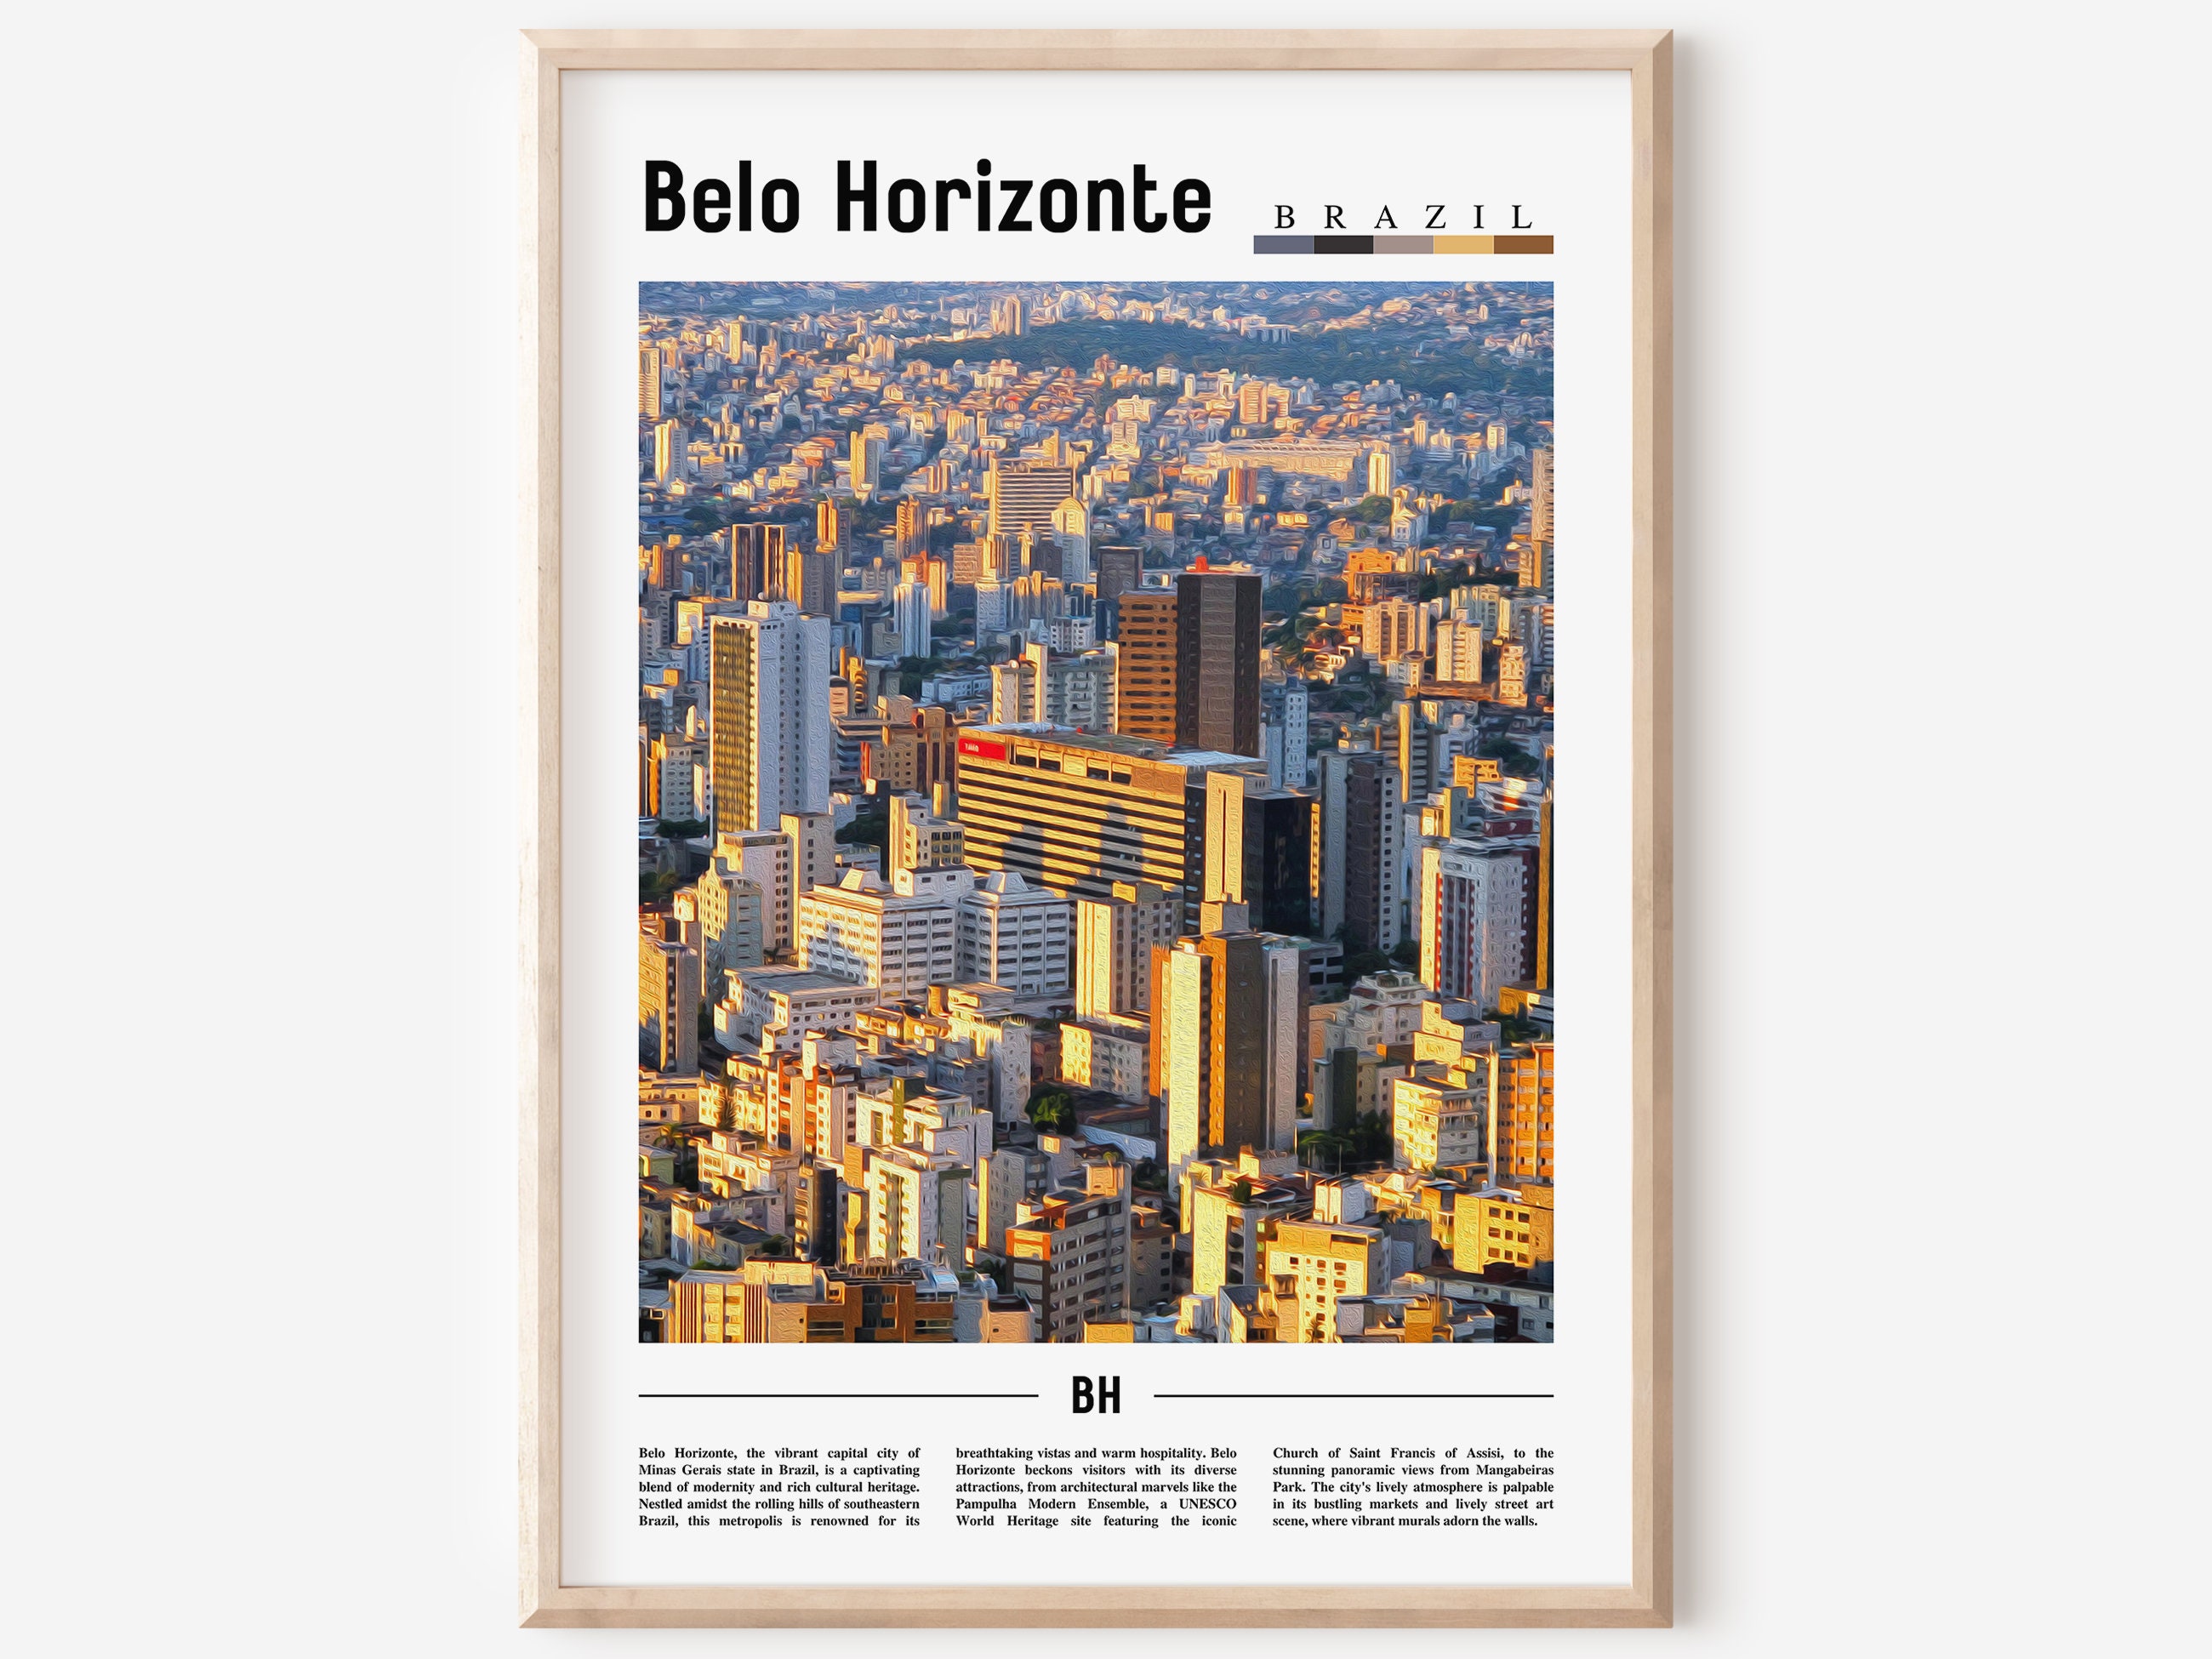 BH GAMES - A Mais Completa Loja de Games de Belo Horizonte - Call